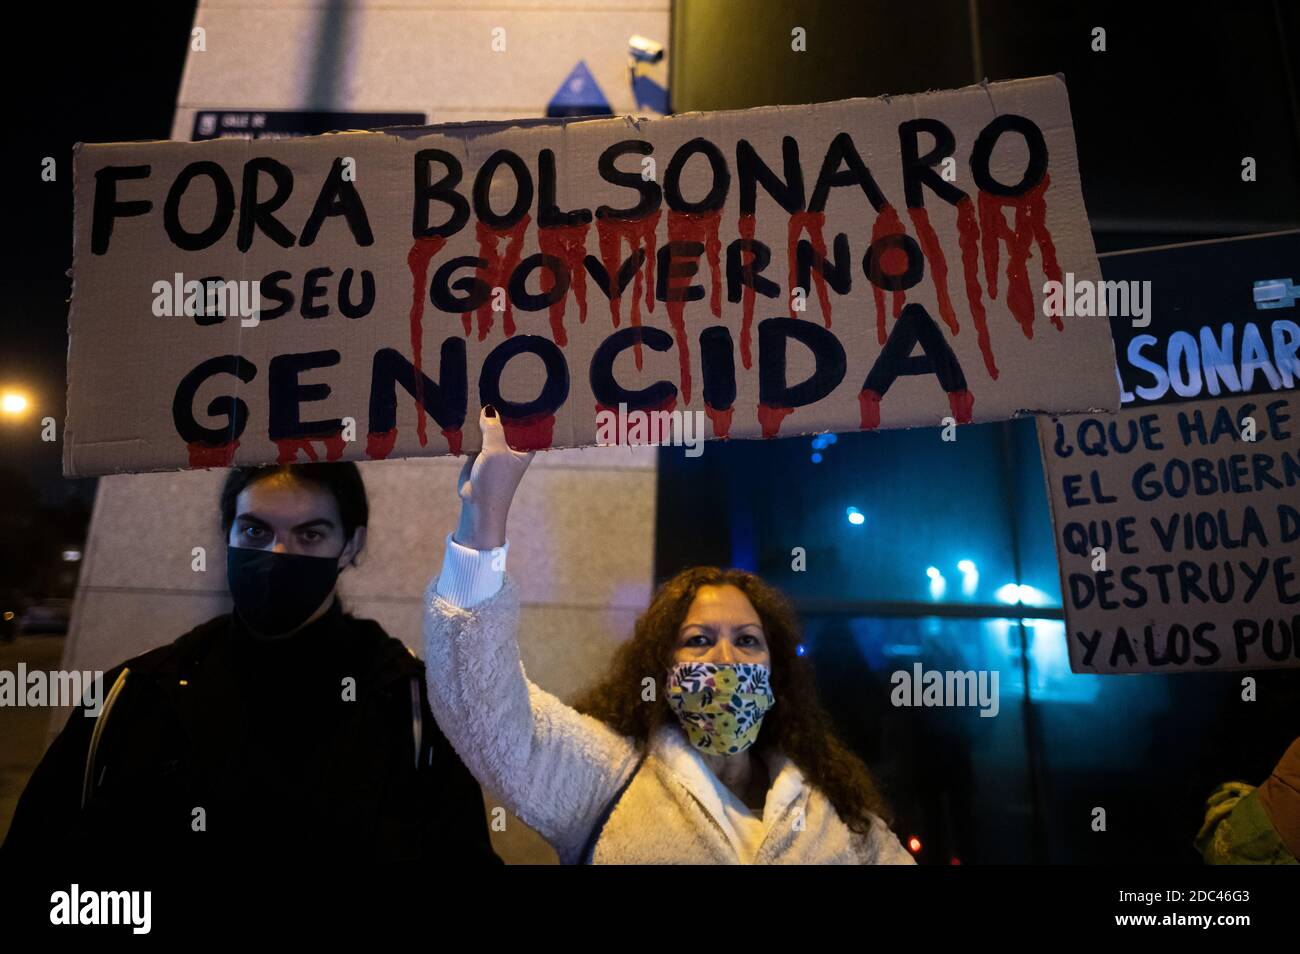 Madrid, Spanien. November 2020. Eine Frau mit einem Plakat gegen den brasilianischen Präsidenten J. Bolsonaro während eines Protestes gegen das Handelsabkommen EU-Mercosur, in dem ein Ende der Verletzung der Menschenrechte und der Zerstörung der Natur gefordert wird. Quelle: Marcos del Mazo/Alamy Live News Stockfoto